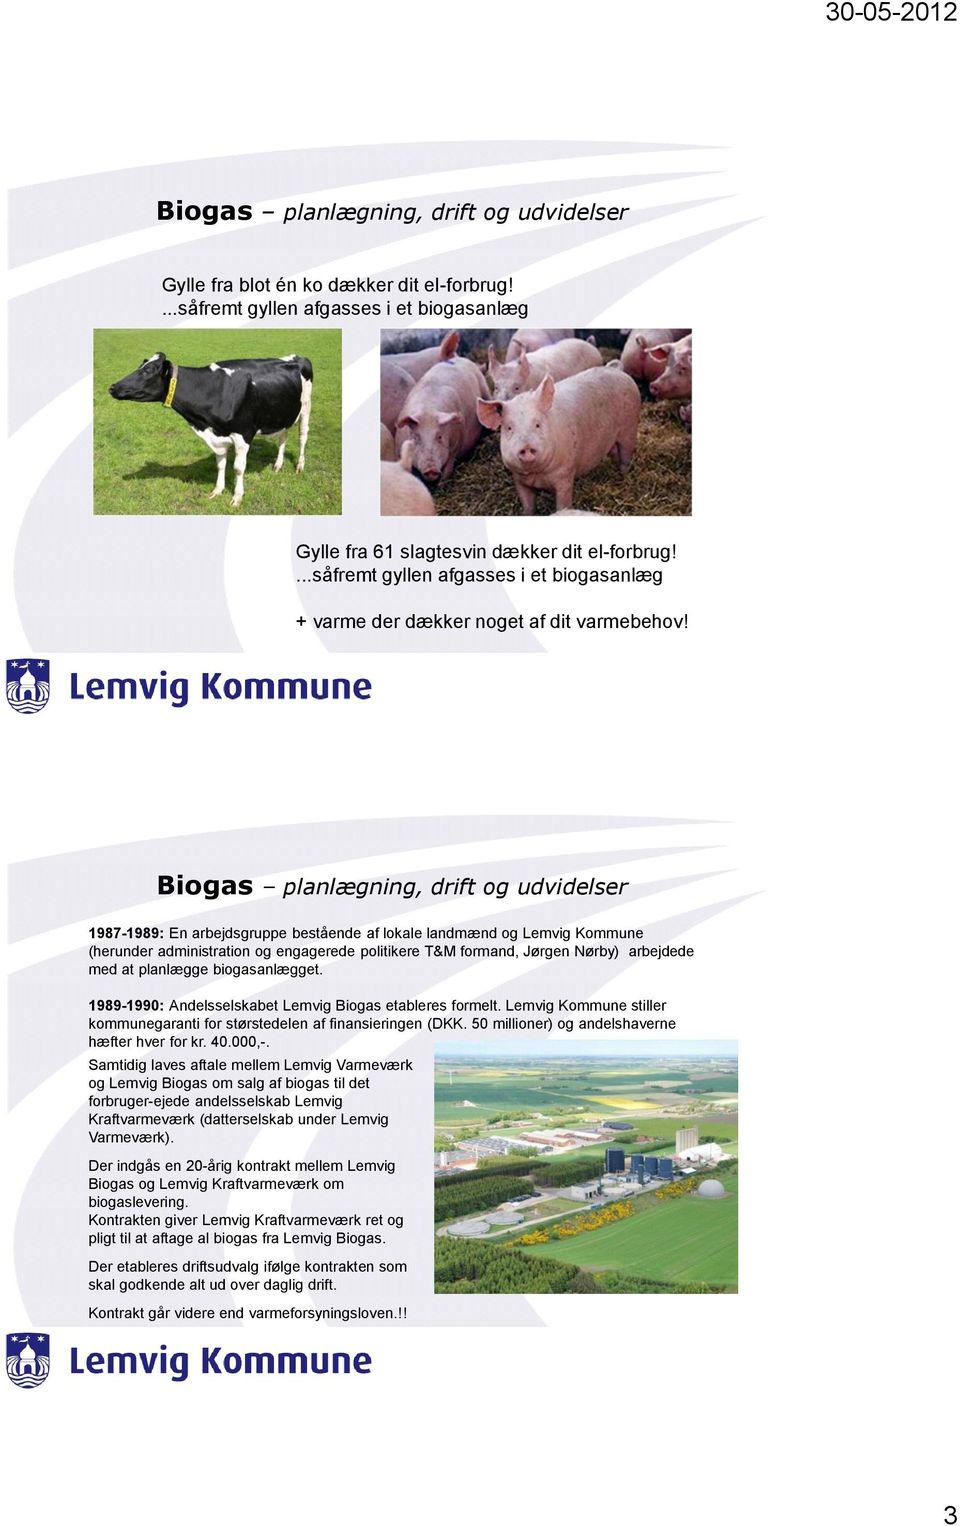 1987-1989: En arbejdsgruppe bestående af lokale landmænd og Lemvig Kommune (herunder administration og engagerede politikere T&M formand, Jørgen Nørby) arbejdede med at planlægge biogasanlægget.